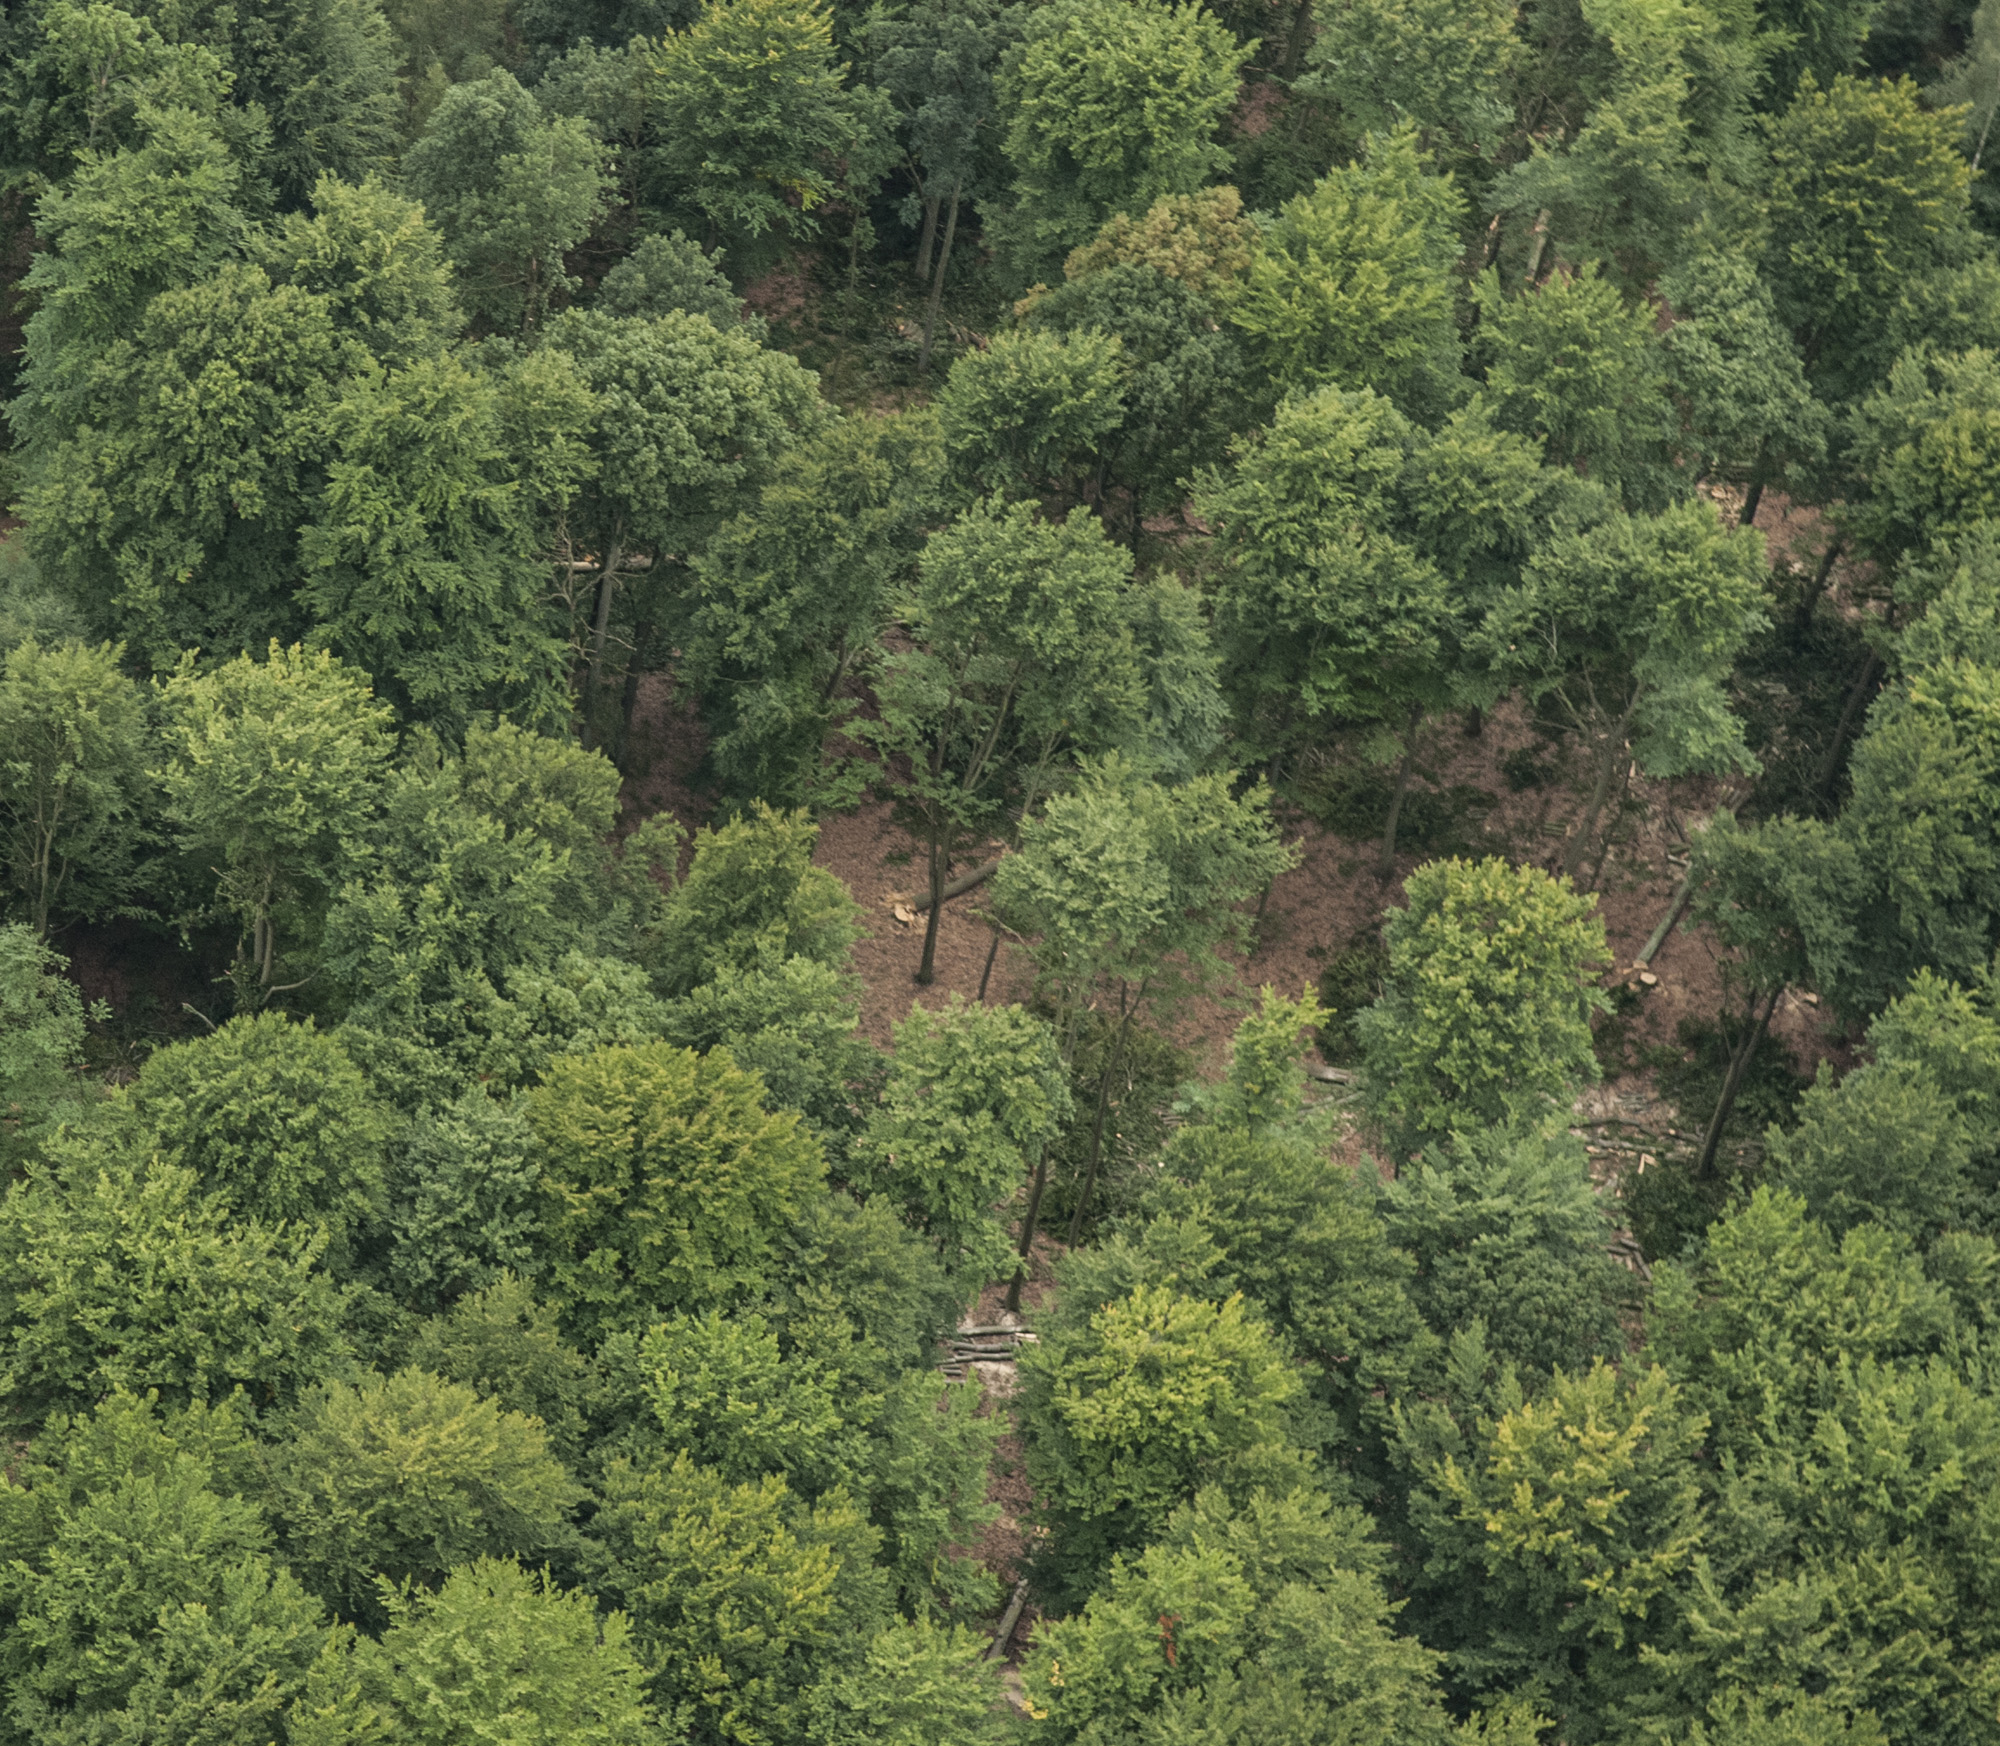 Pozyskanie drewna w Puszczy Bukowej jest rozłożone w czasie. Powoli na przestrzeni wielu lat usuwa się część drzew doświetlając dno lasu i umożliwiając wzrost młodego pokolenia.